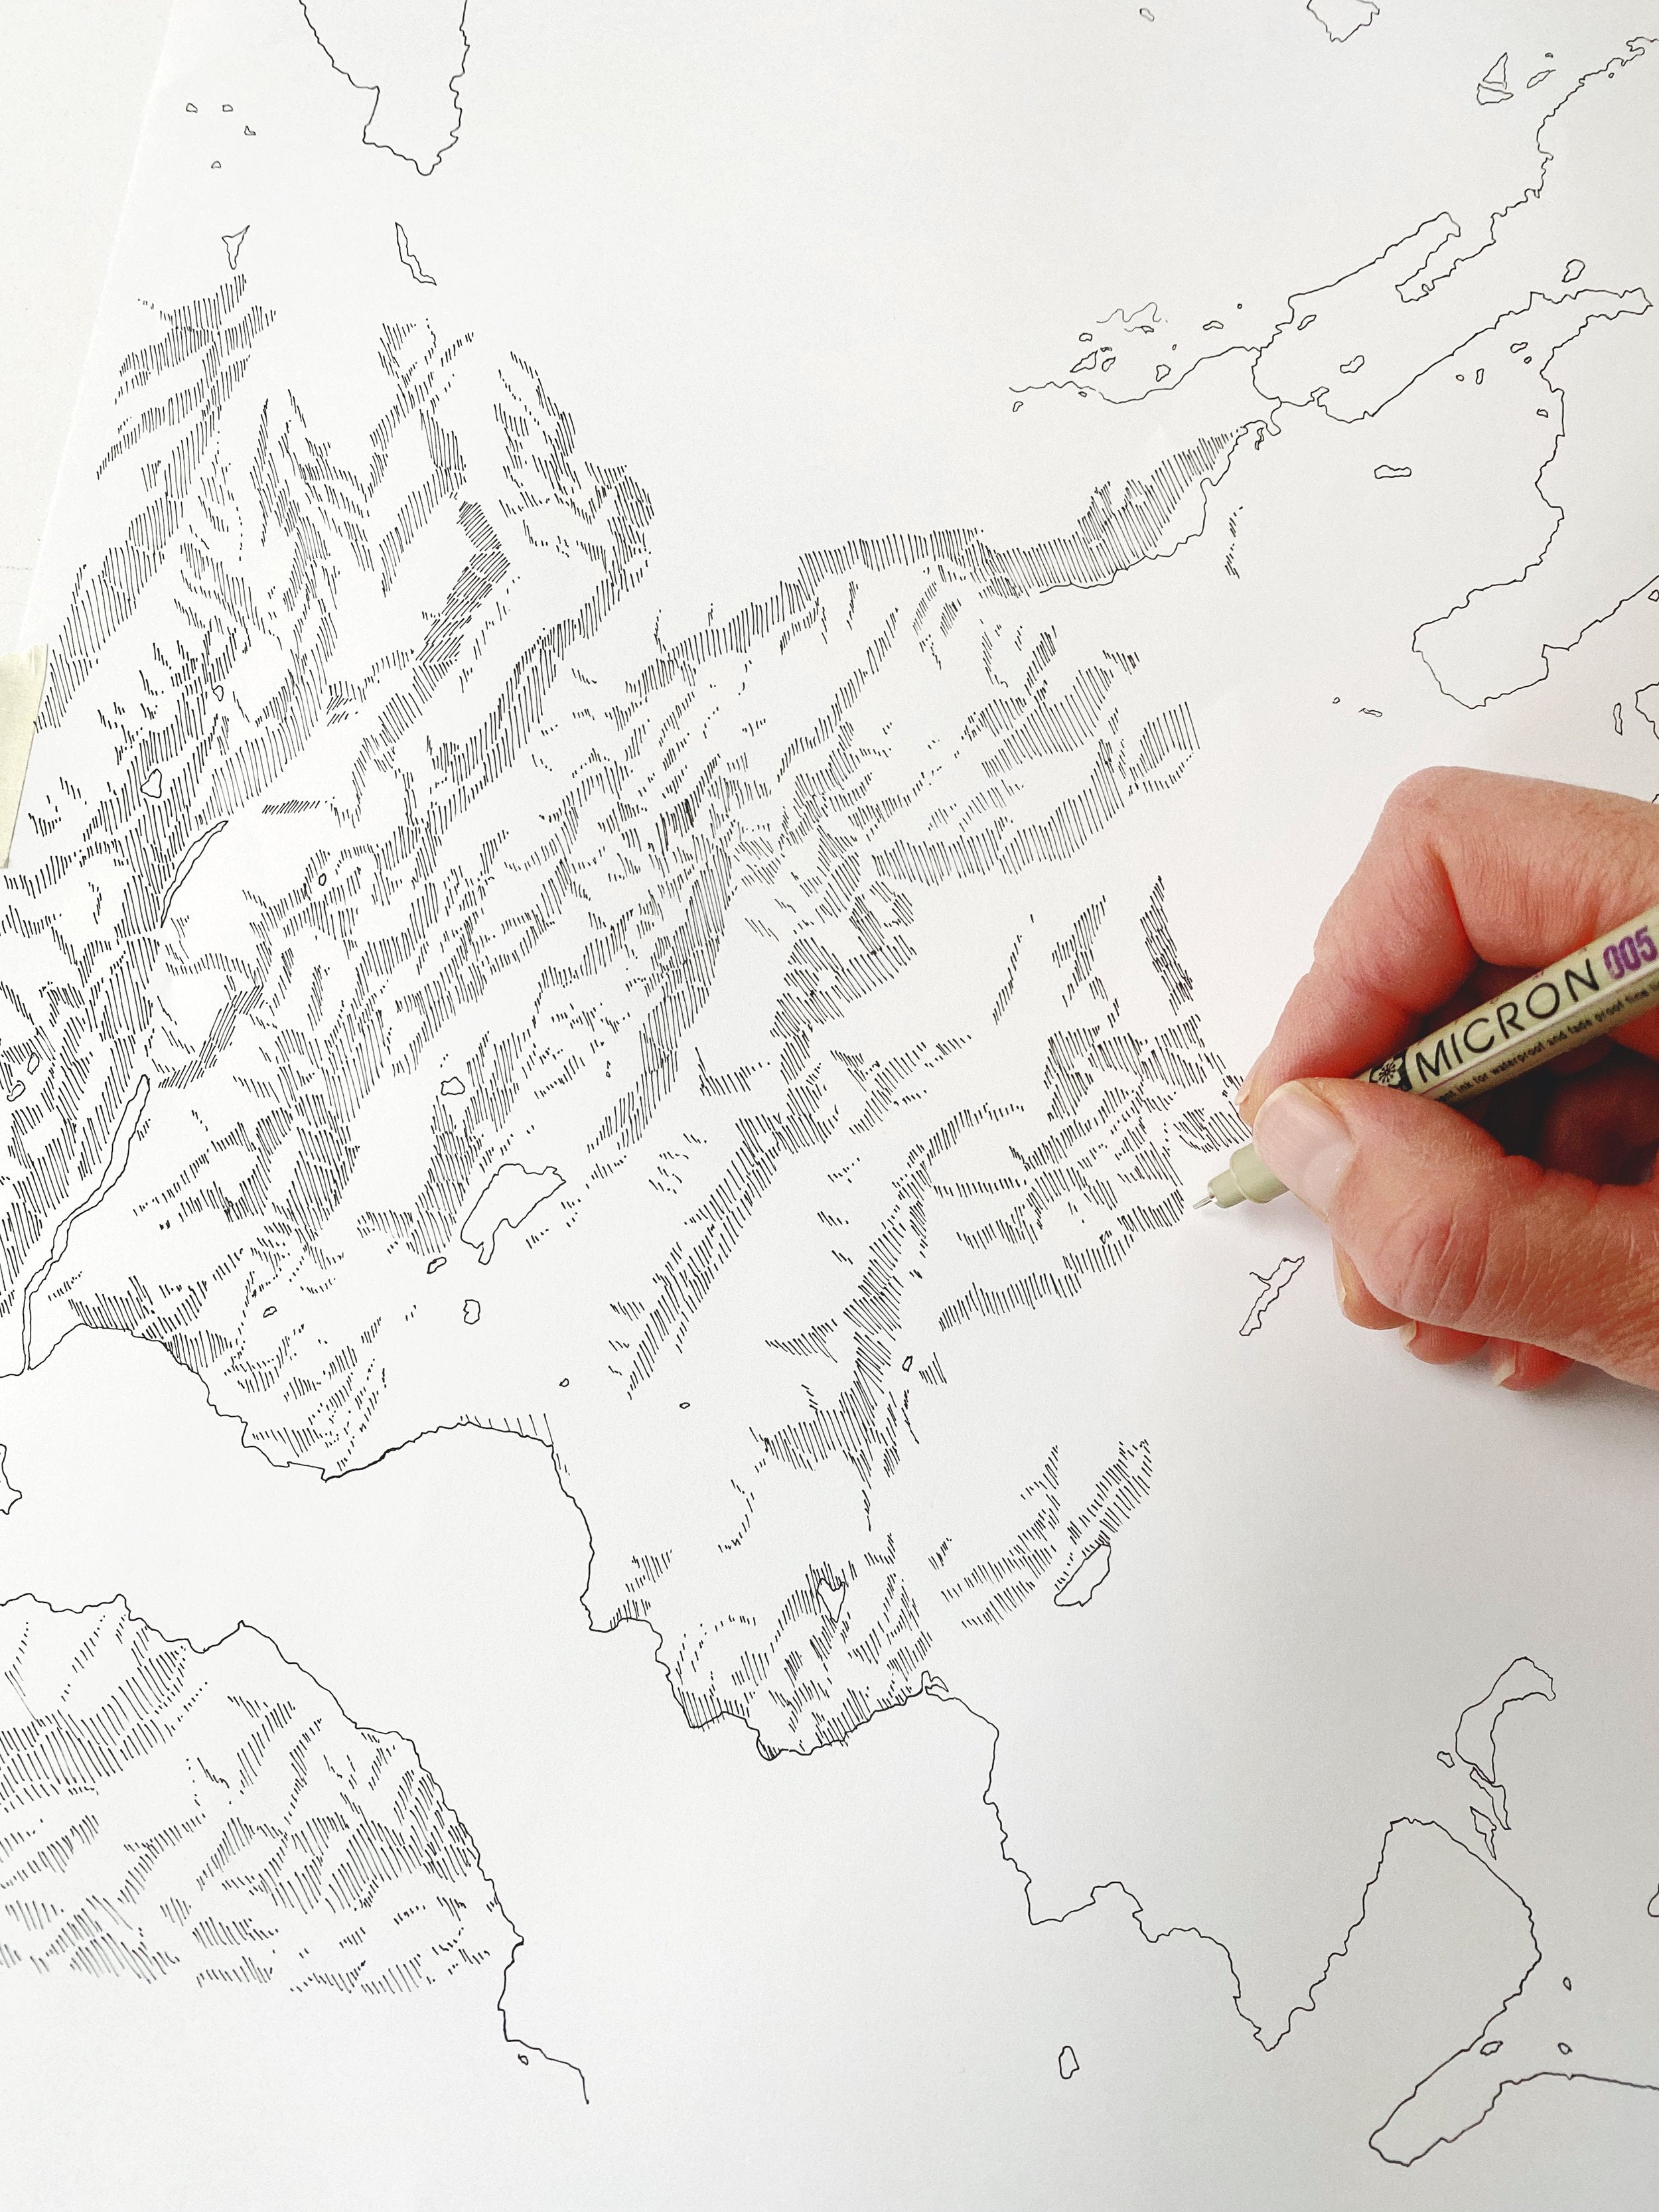 KODIAK Alaska Topographical Map Drawing: PRINT